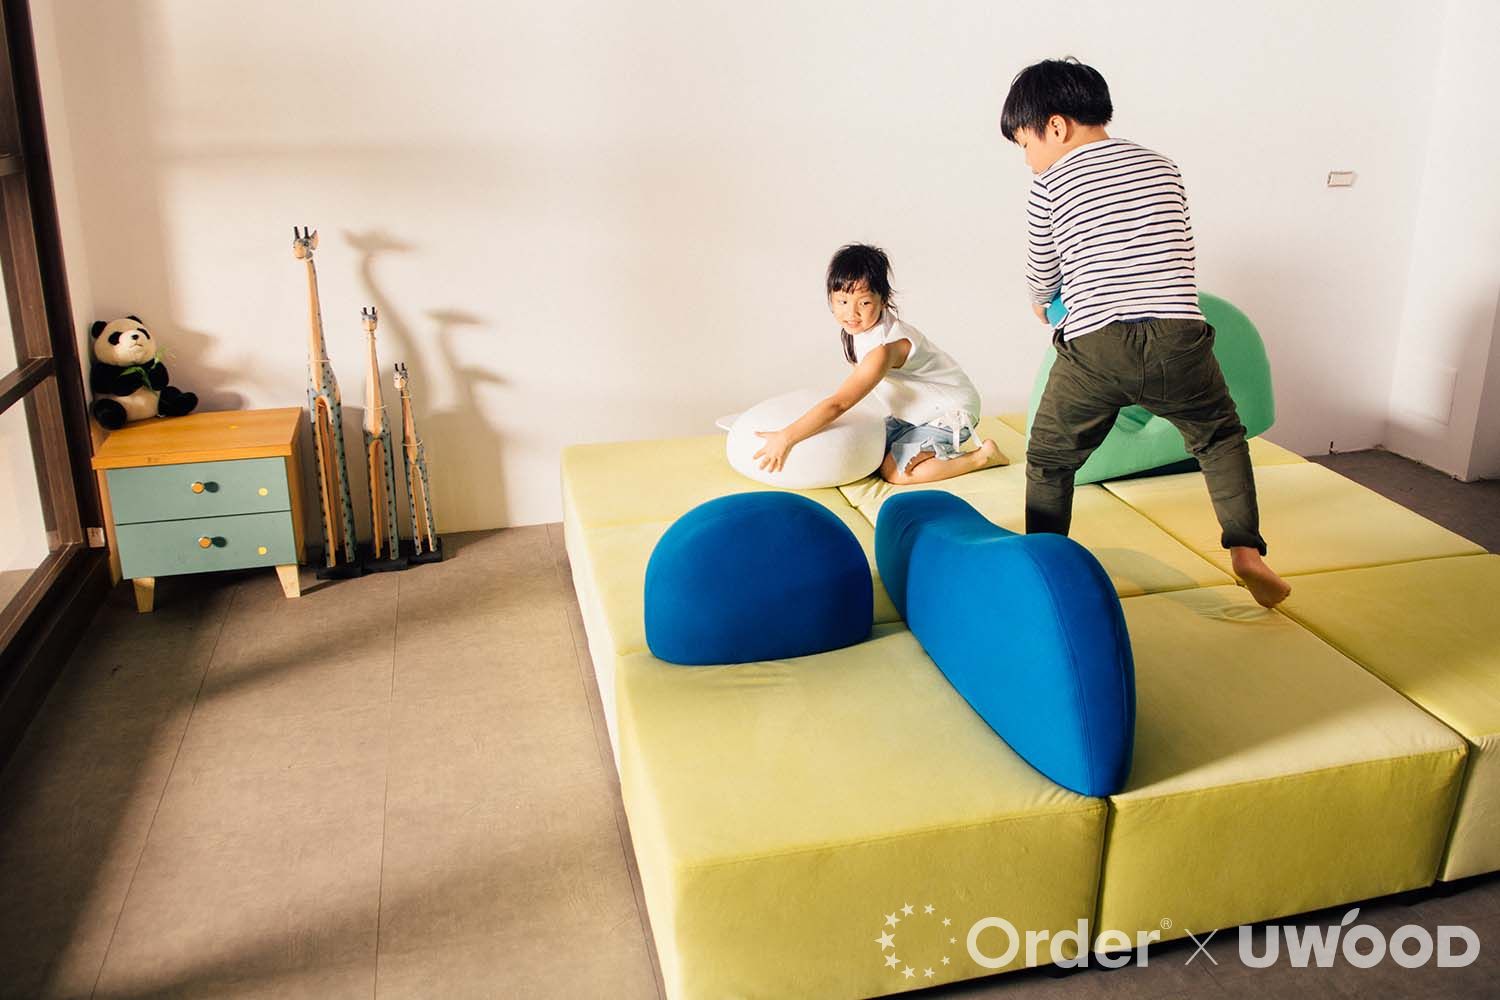 歐德Landscape Sofa造型沙發融合家具、隔板和玩具元素，是兒童公共空間設計之創新家具